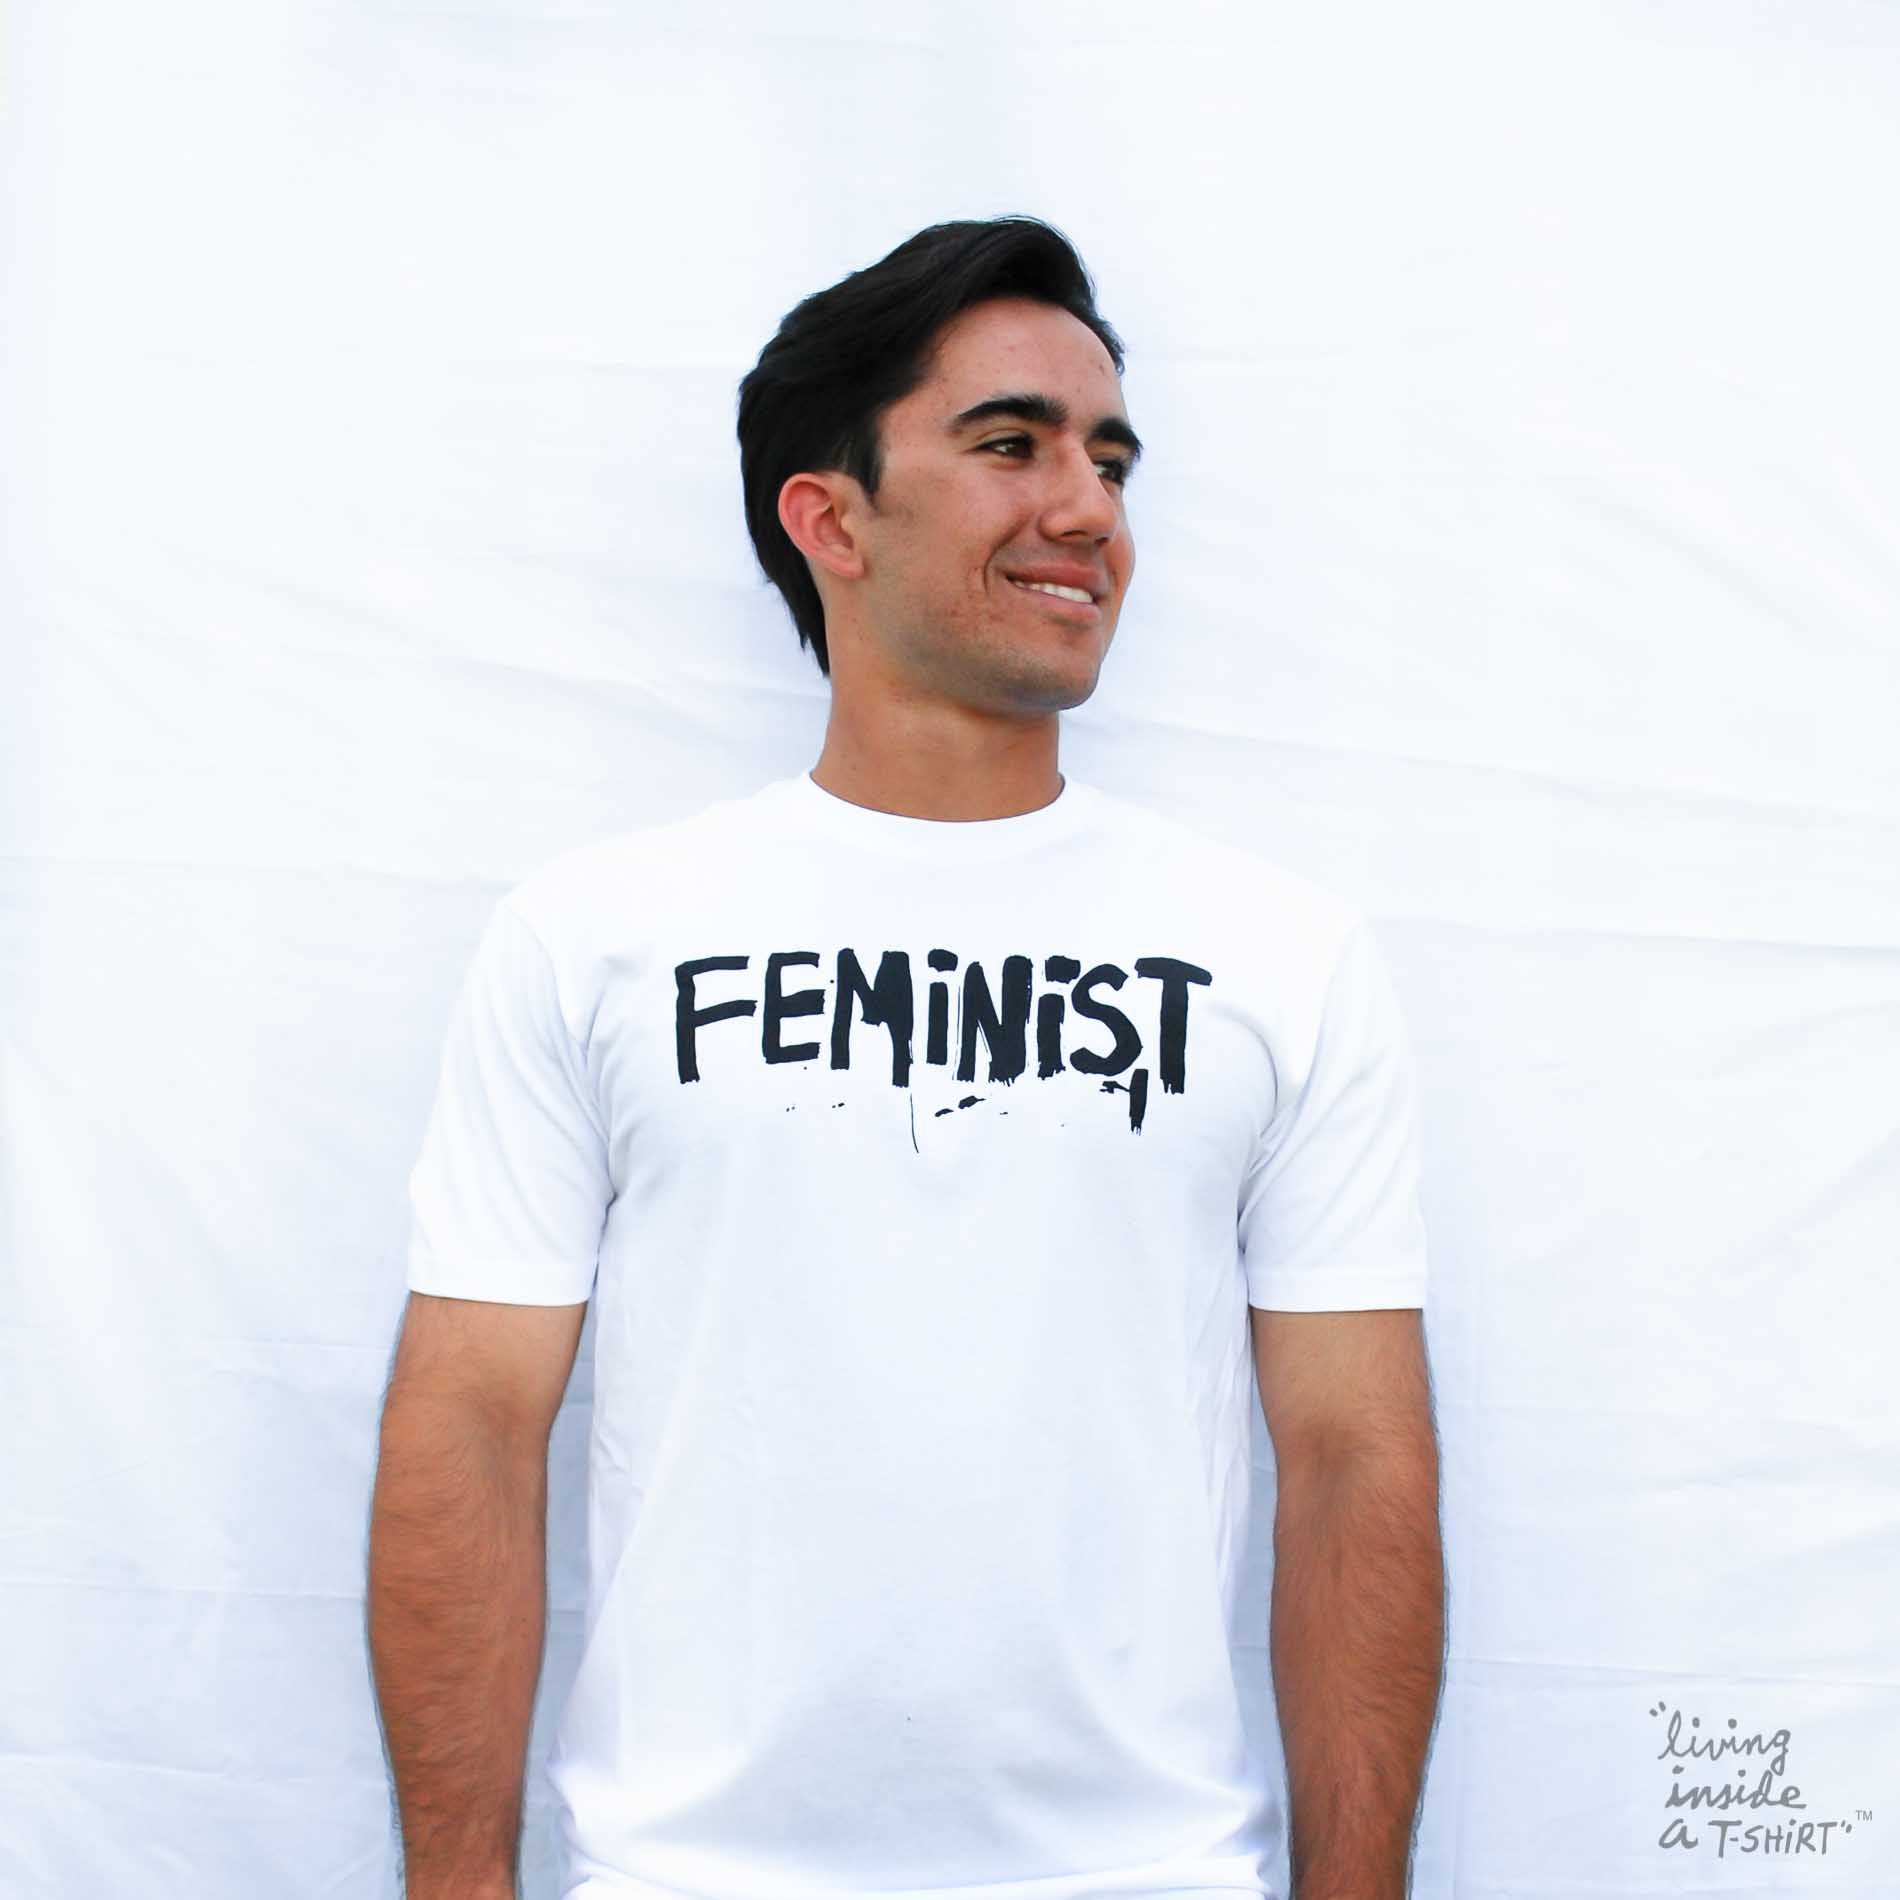 Feminist - Unisex T-shirt